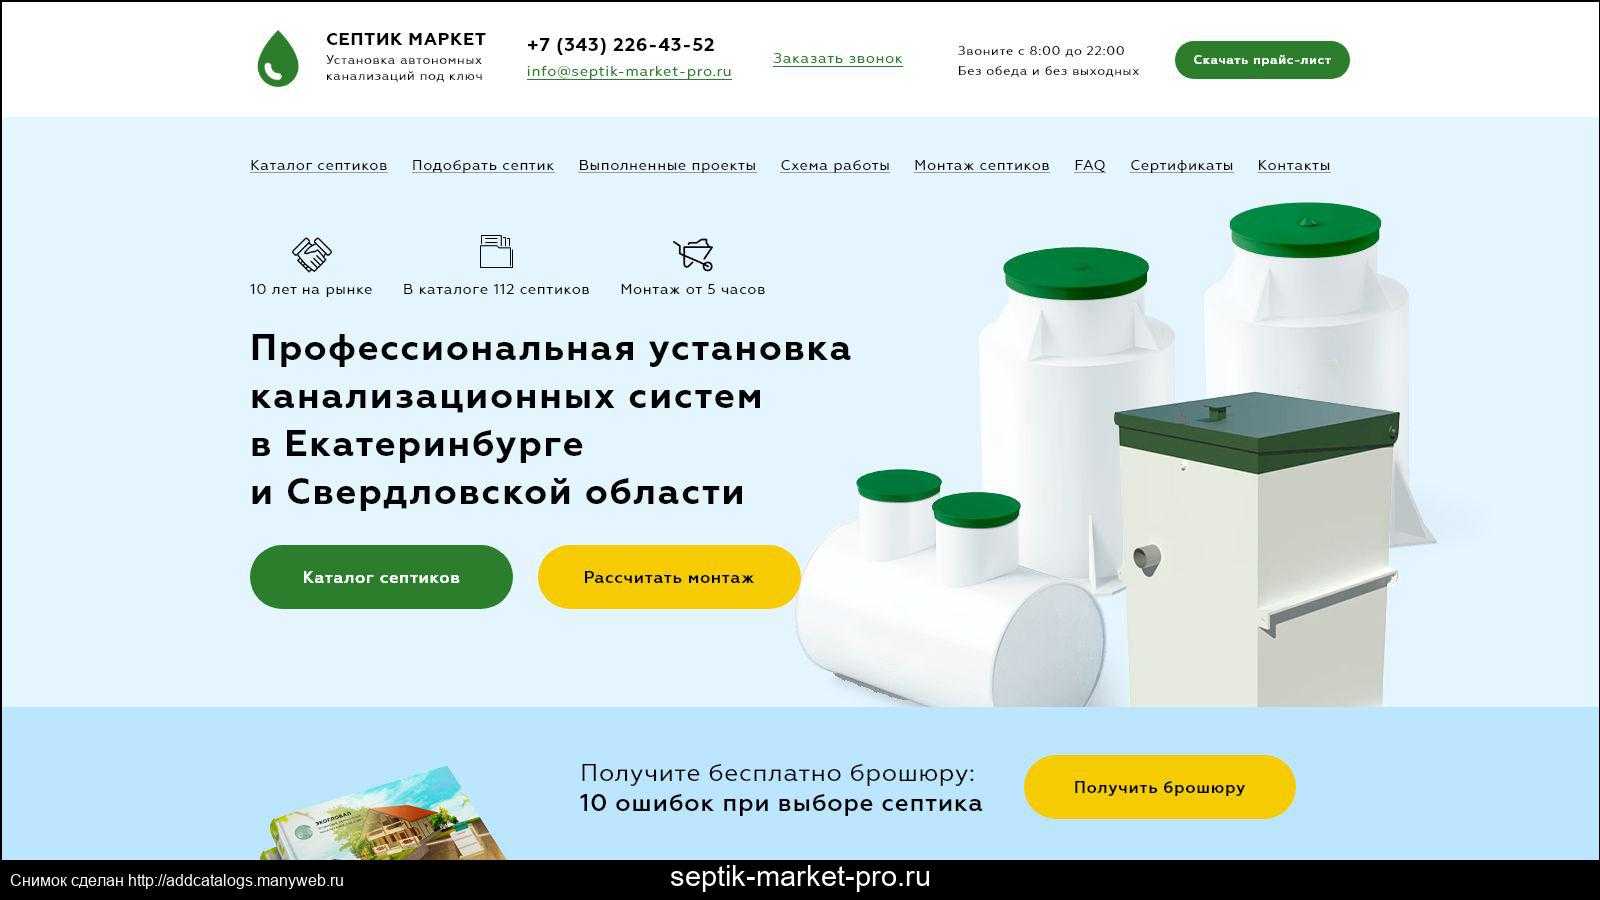 Российский рынок канализационного оборудования сегодня заполнен различными моделями септиков от отечественных и зарубежных производителей Здесь не только